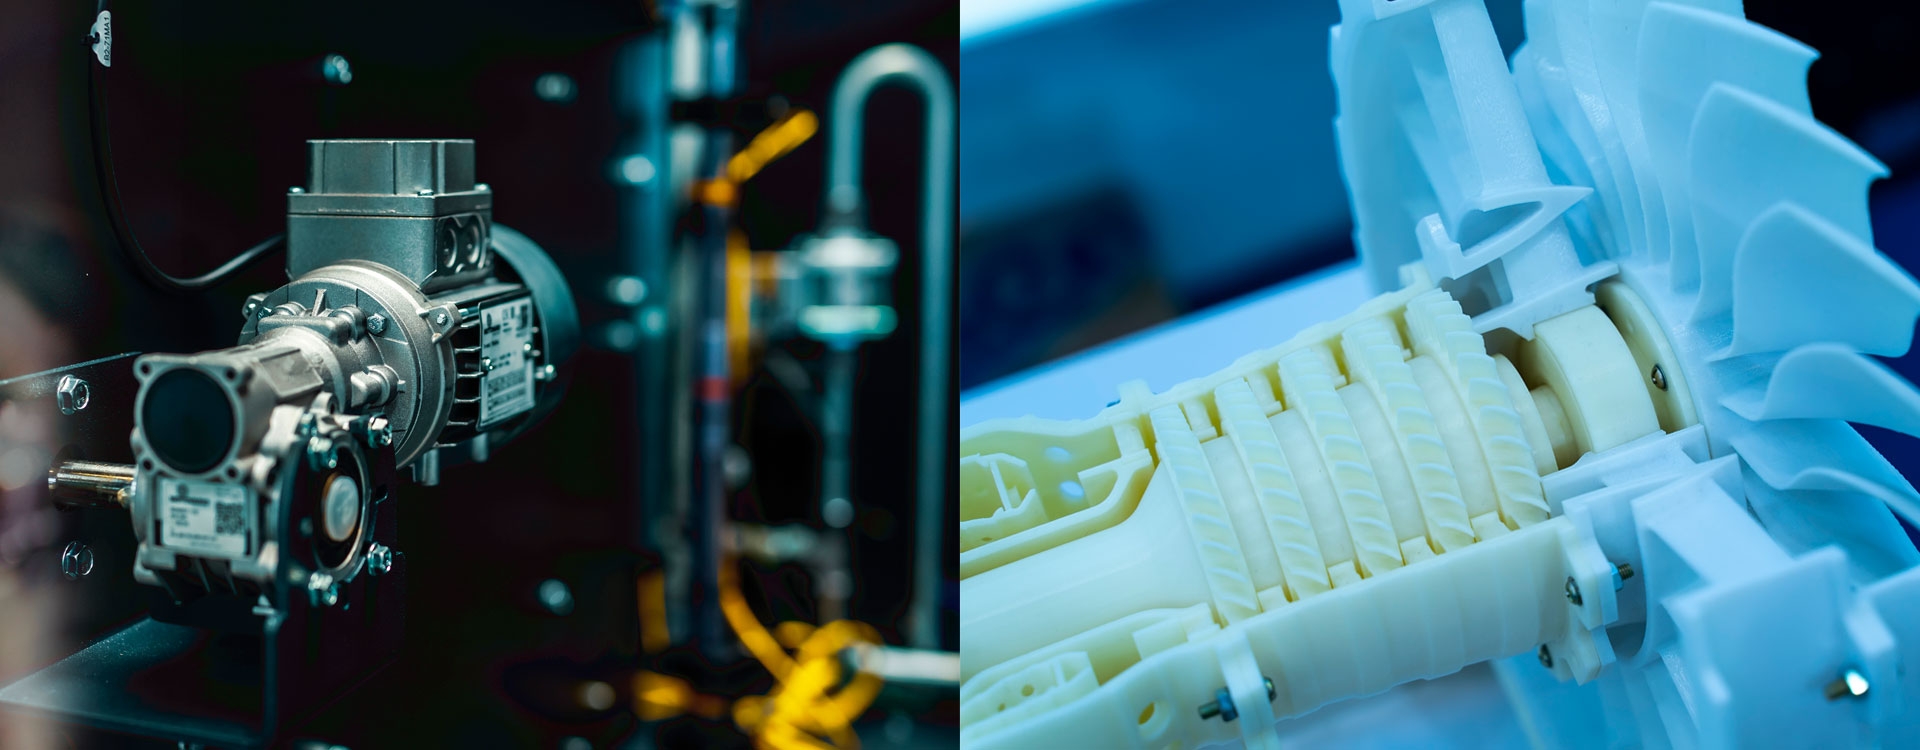 Вибір між 3D-друком та традиційним виробництвом: що підходить для вашого бізнесу?